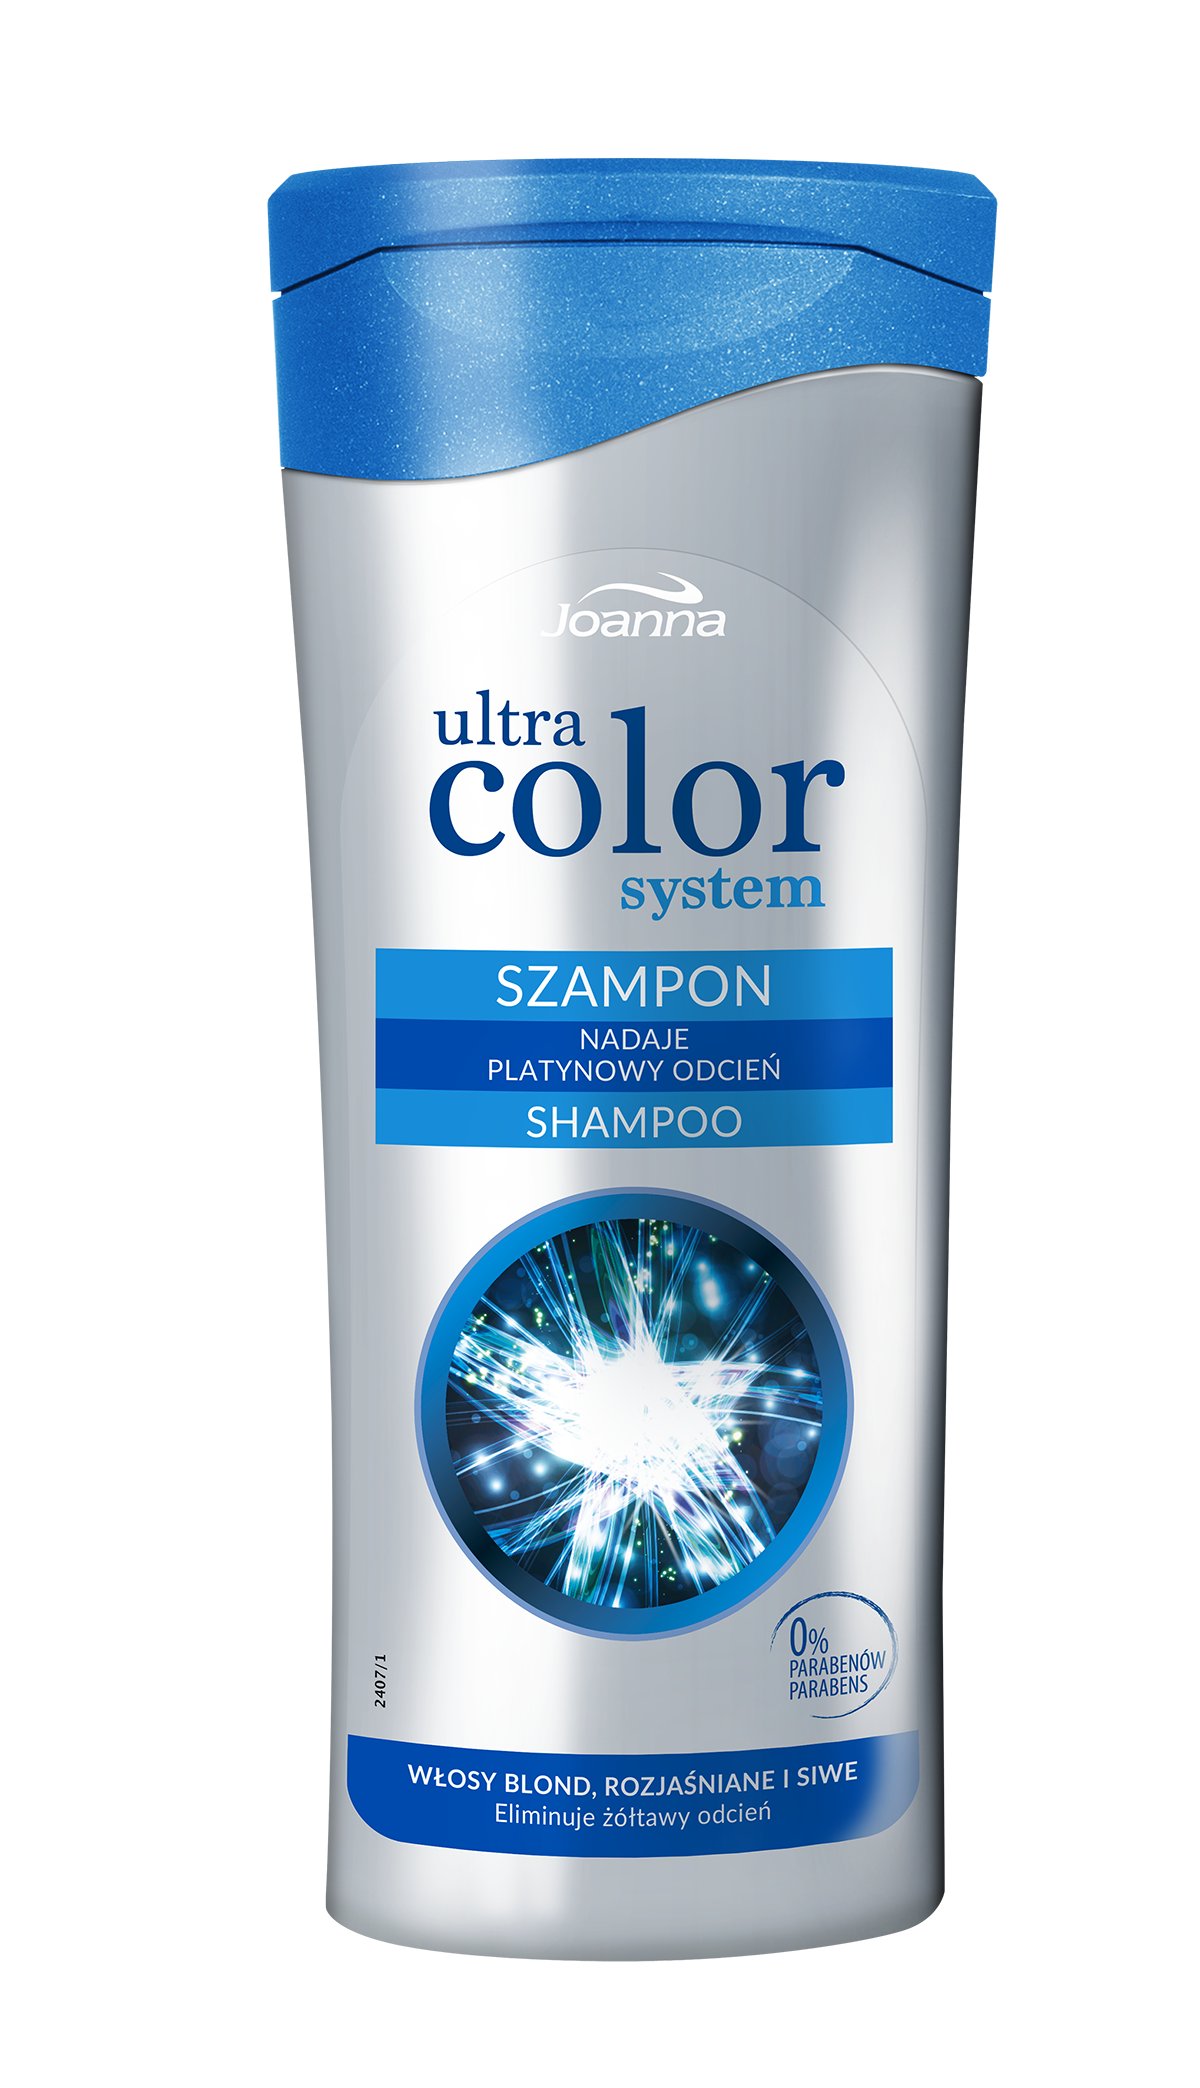 szampon joanna przeciw zoltym wlosom efekty